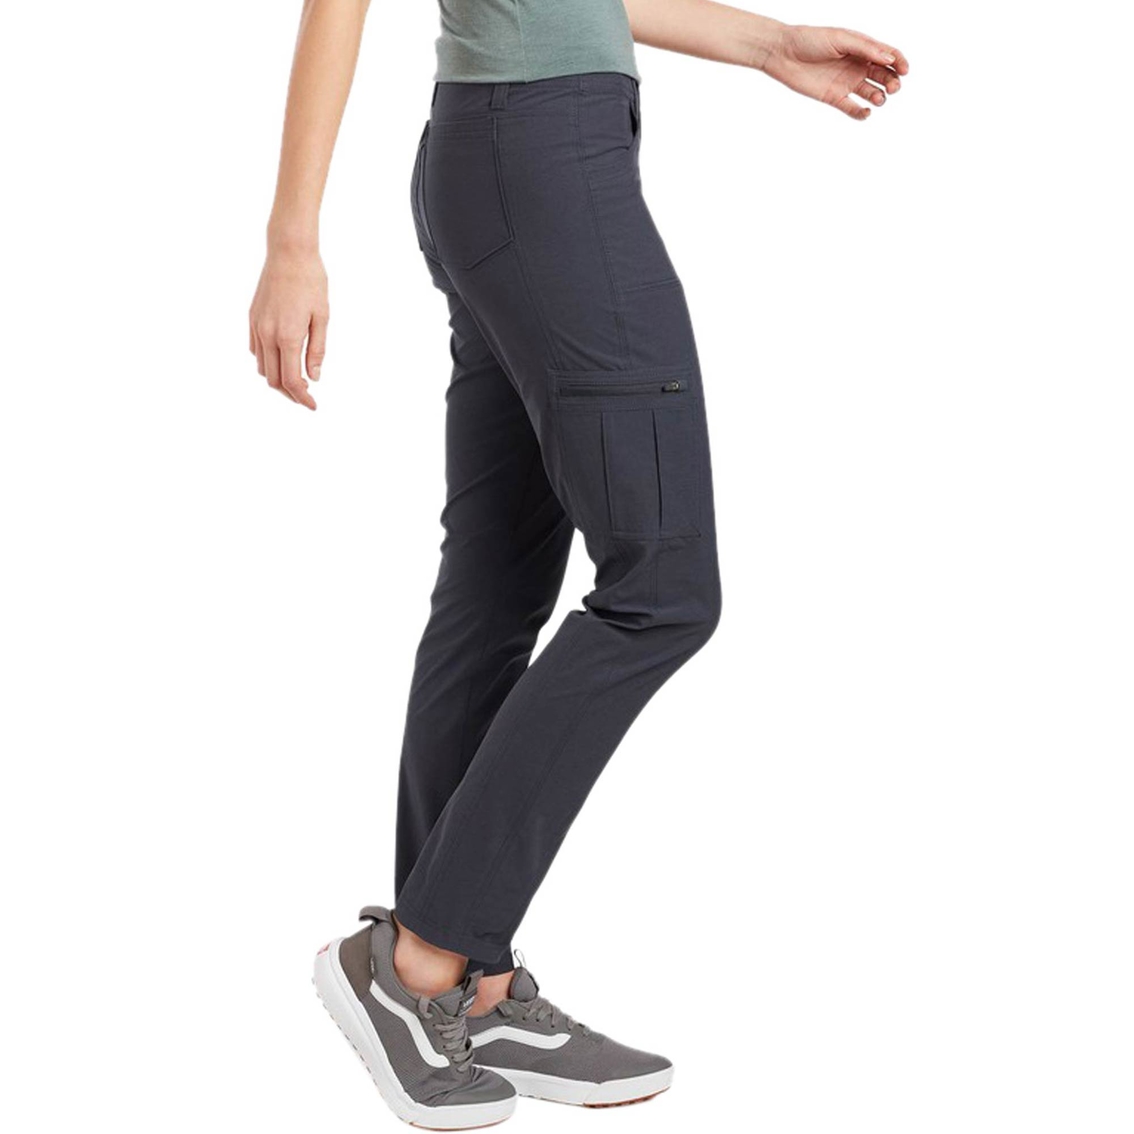 Kuhl Women's Horizn Skinny Hiking Pants | Pants | Clothing ...